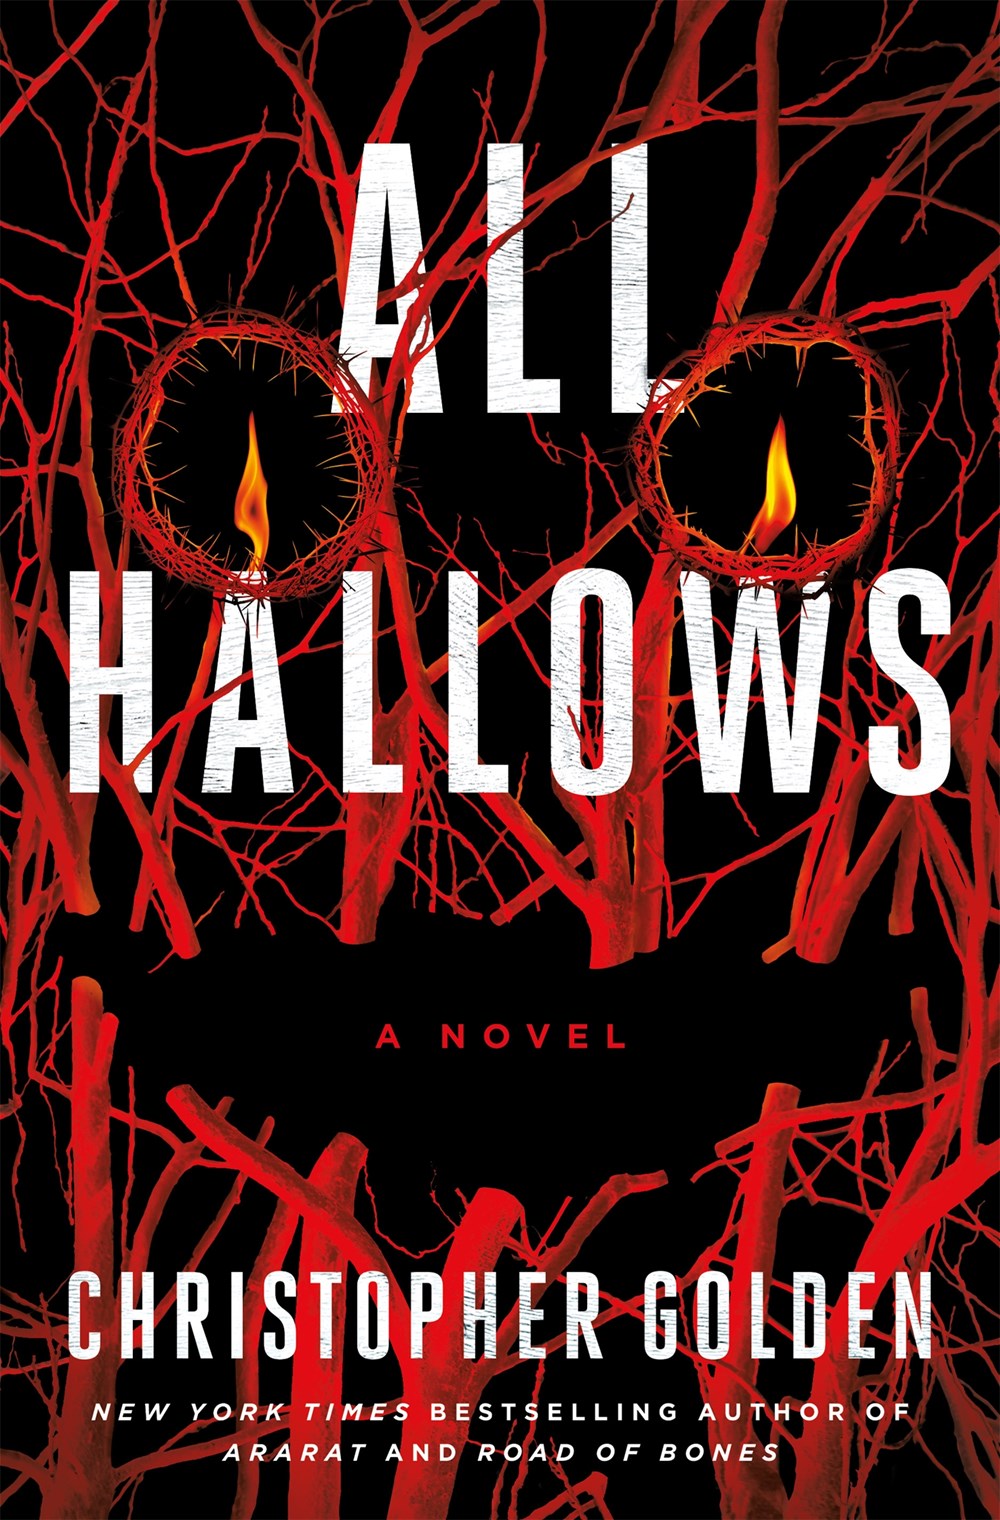 All Hallows: A Novel